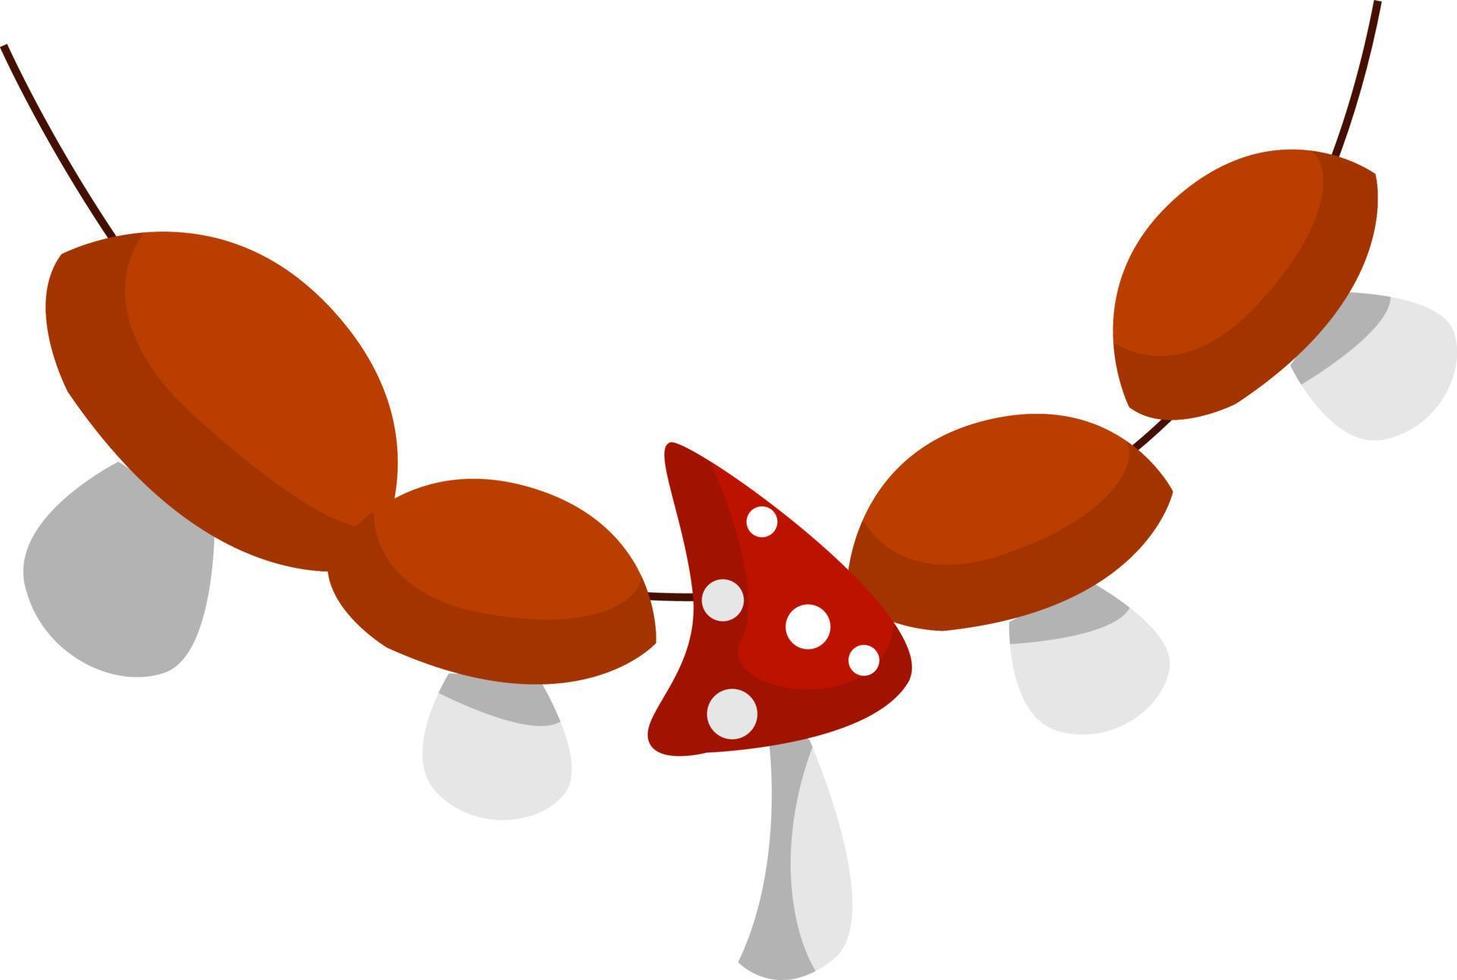 Poisonous mushroom, illustration, vector on white background.